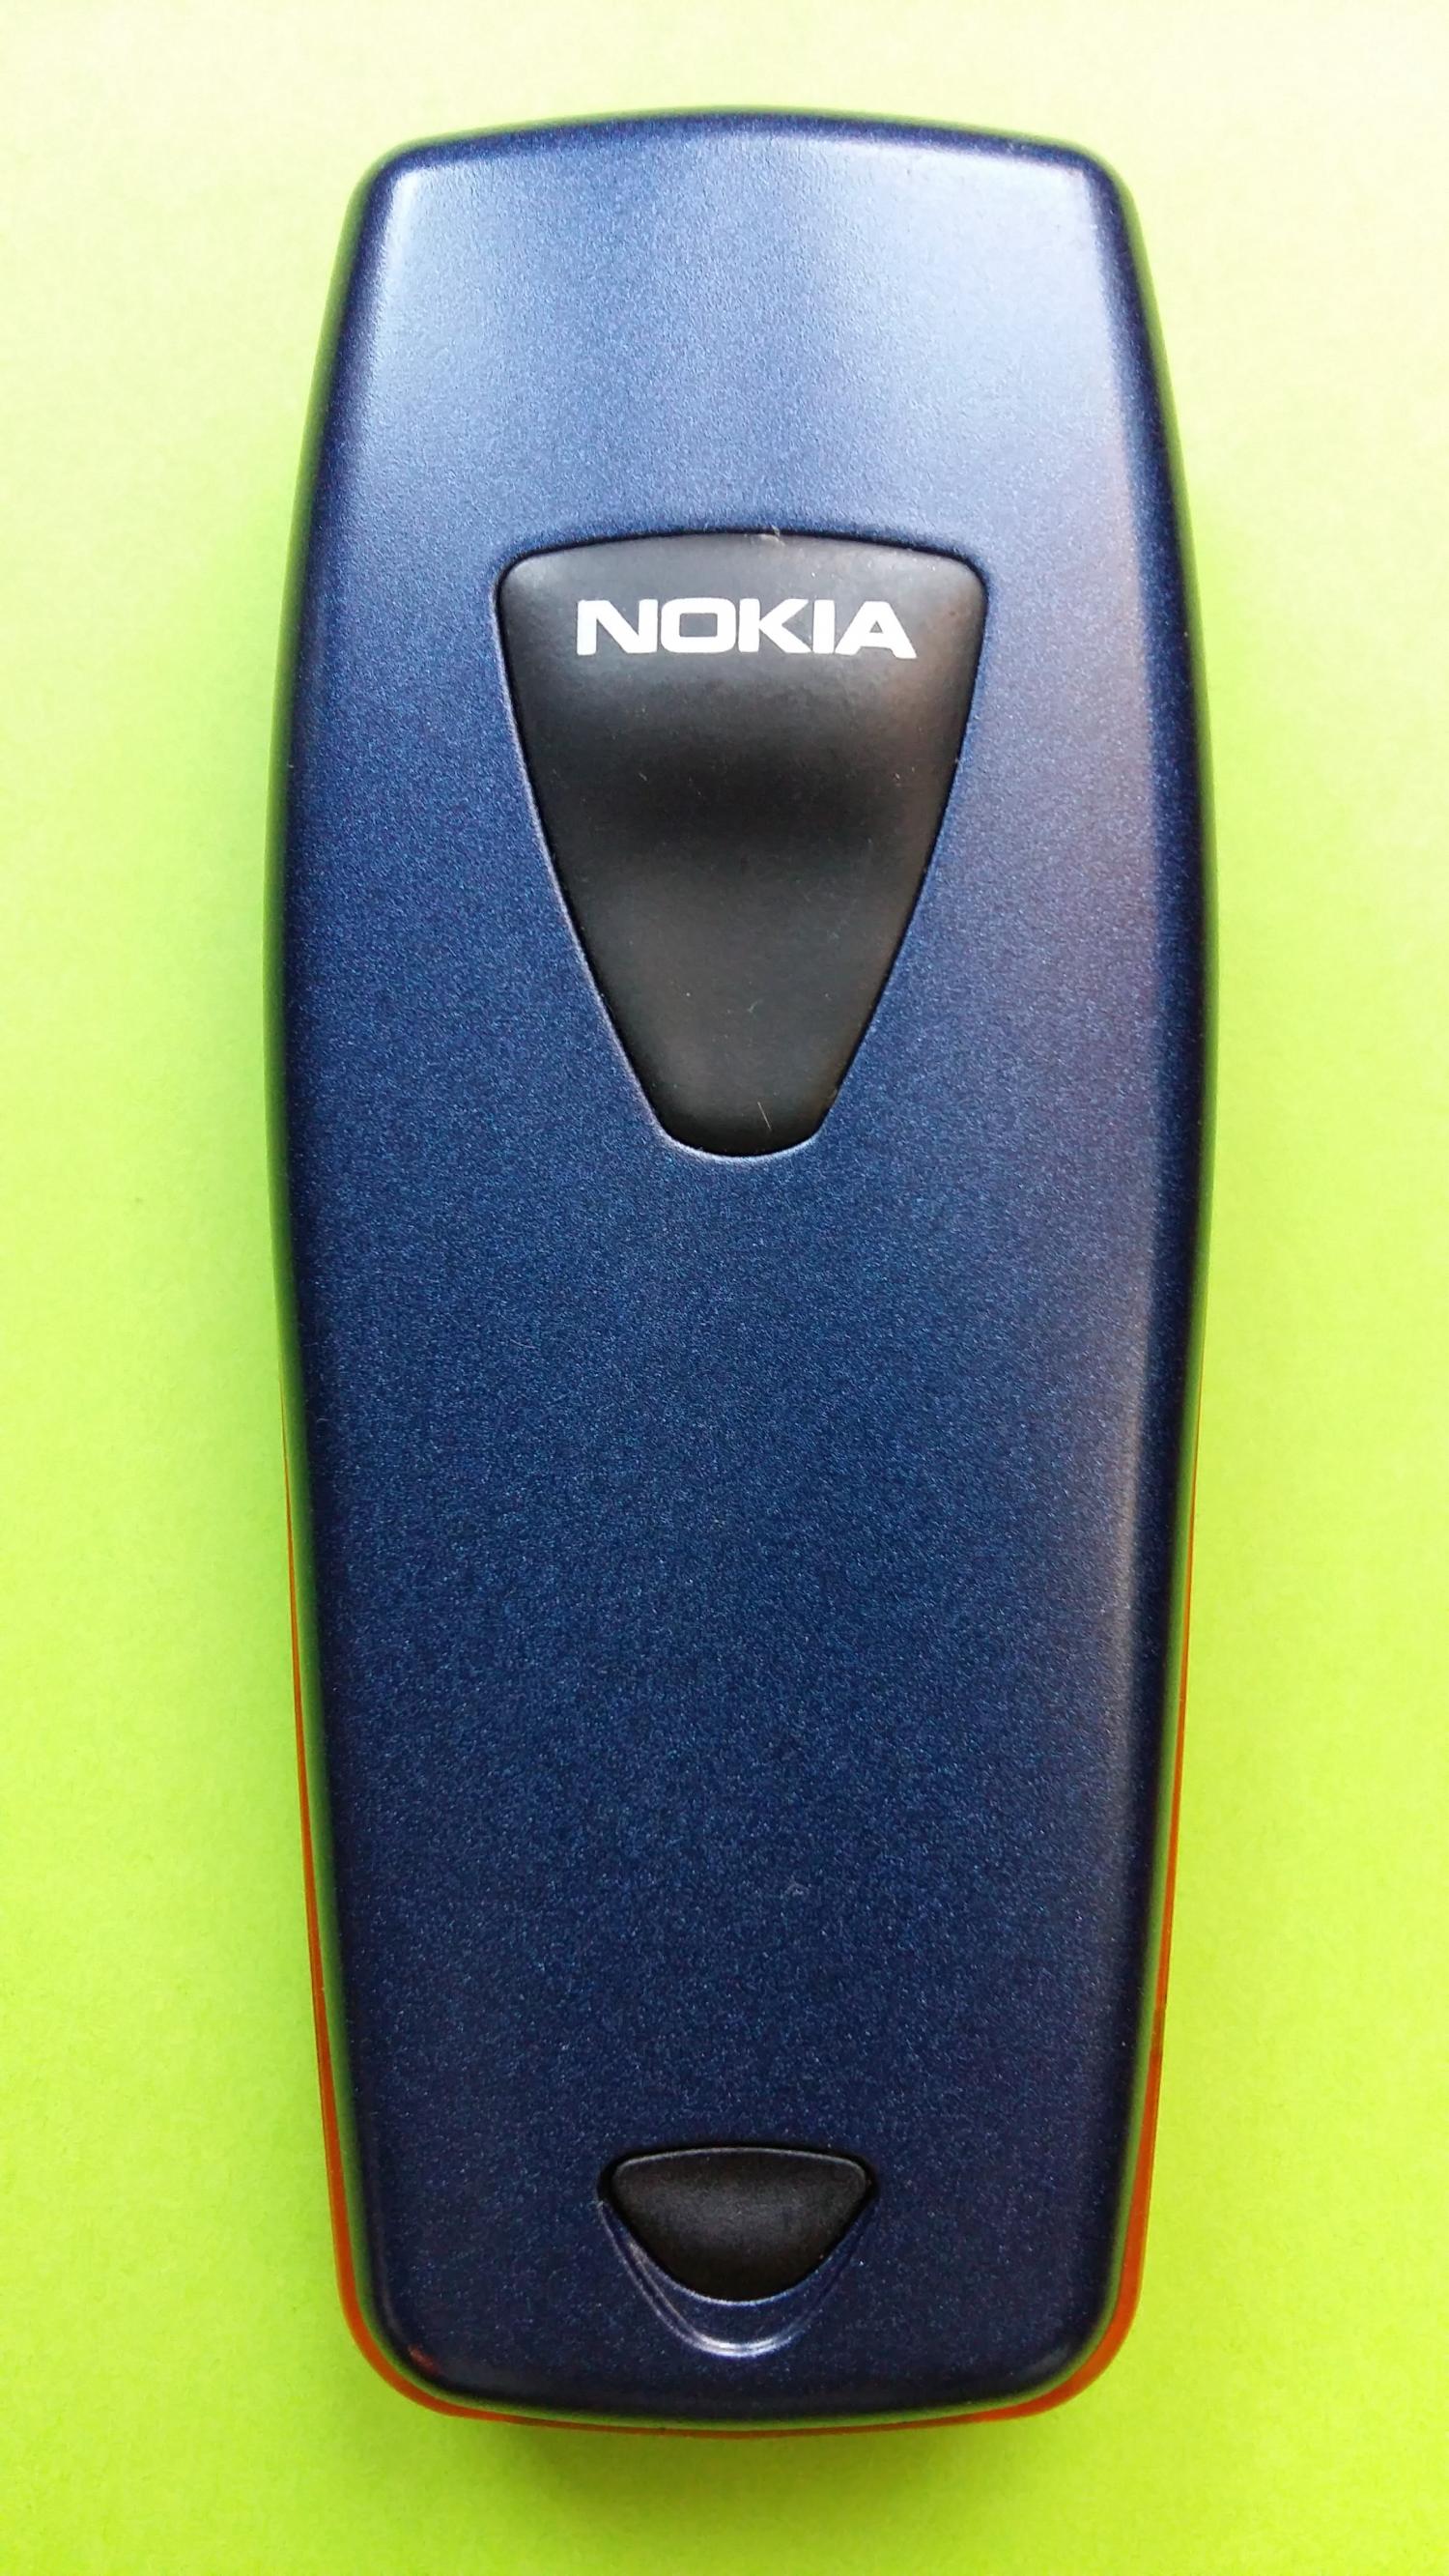 image-7309394-Nokia 3510i (21)2.jpg